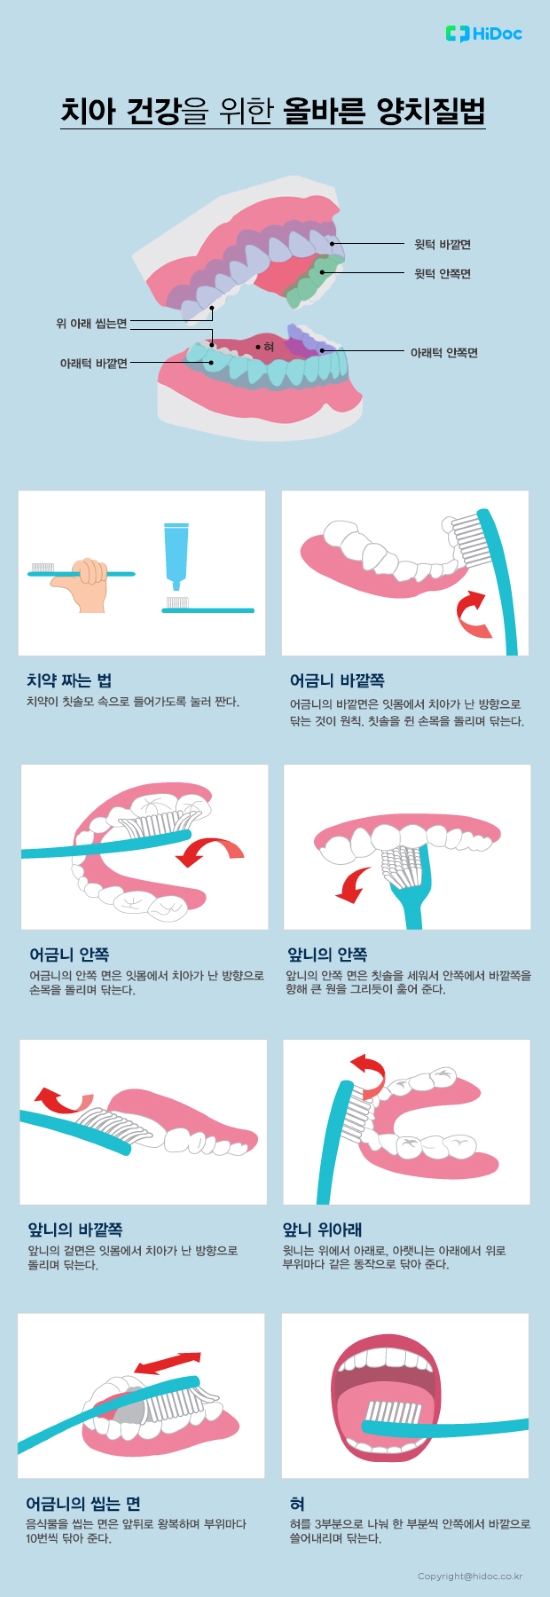 치아 건강을 위한 올바른 양치질법